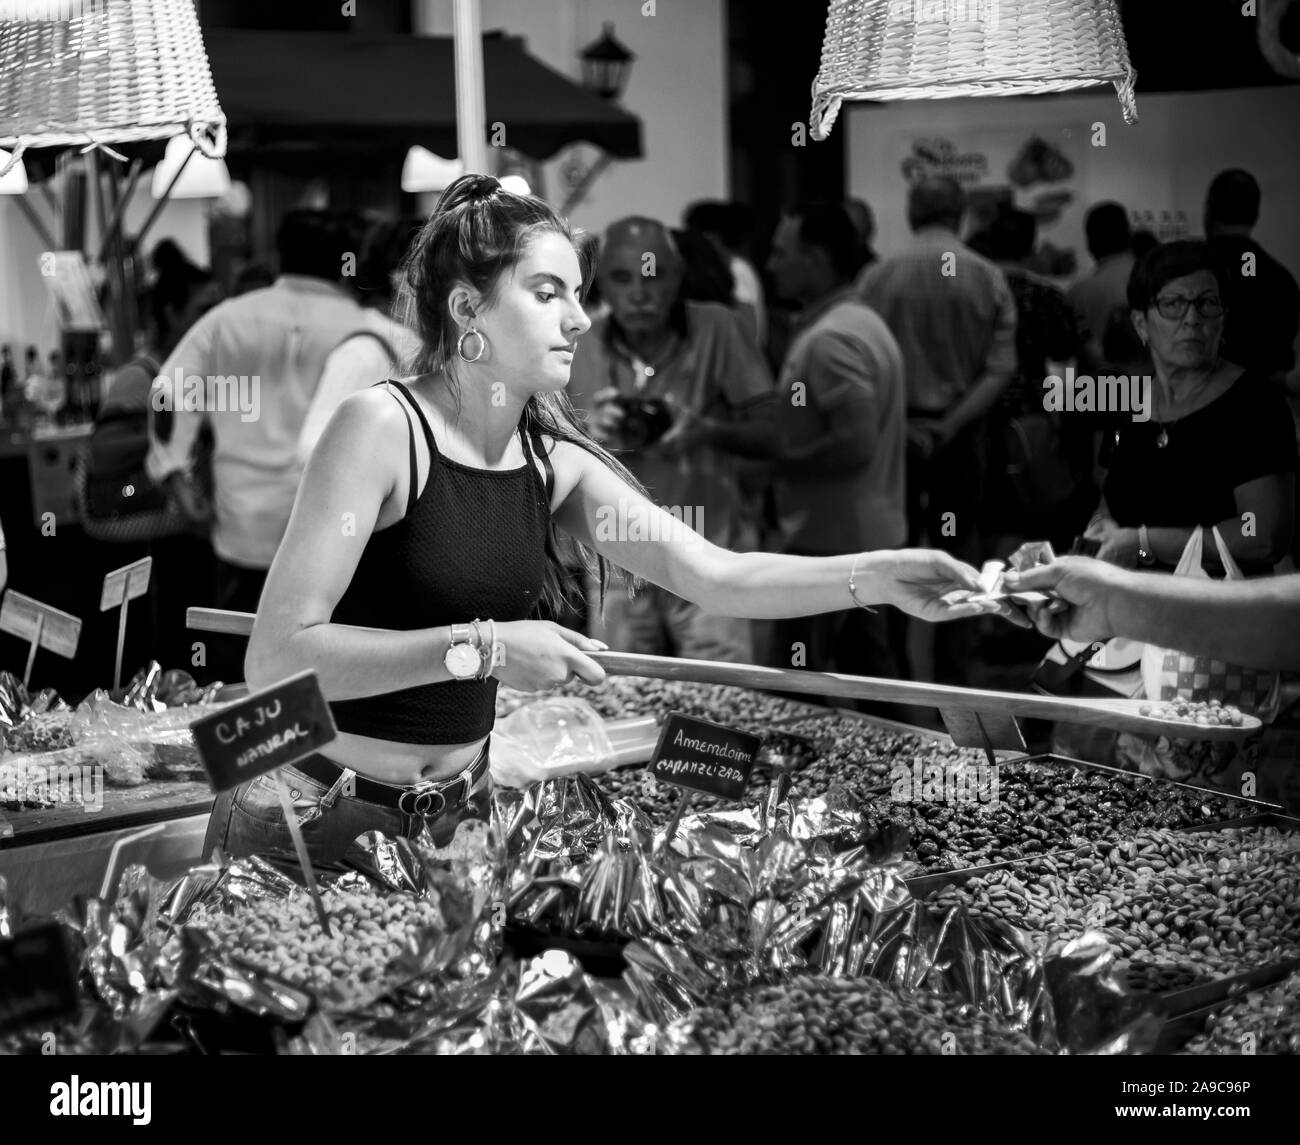 Vilareal de Santo Antonio, Portugal - Okt 12 2.019 - trockenfrüchte Verkäufer in Street Market in Schwarz und Weiß Foto Stockfoto